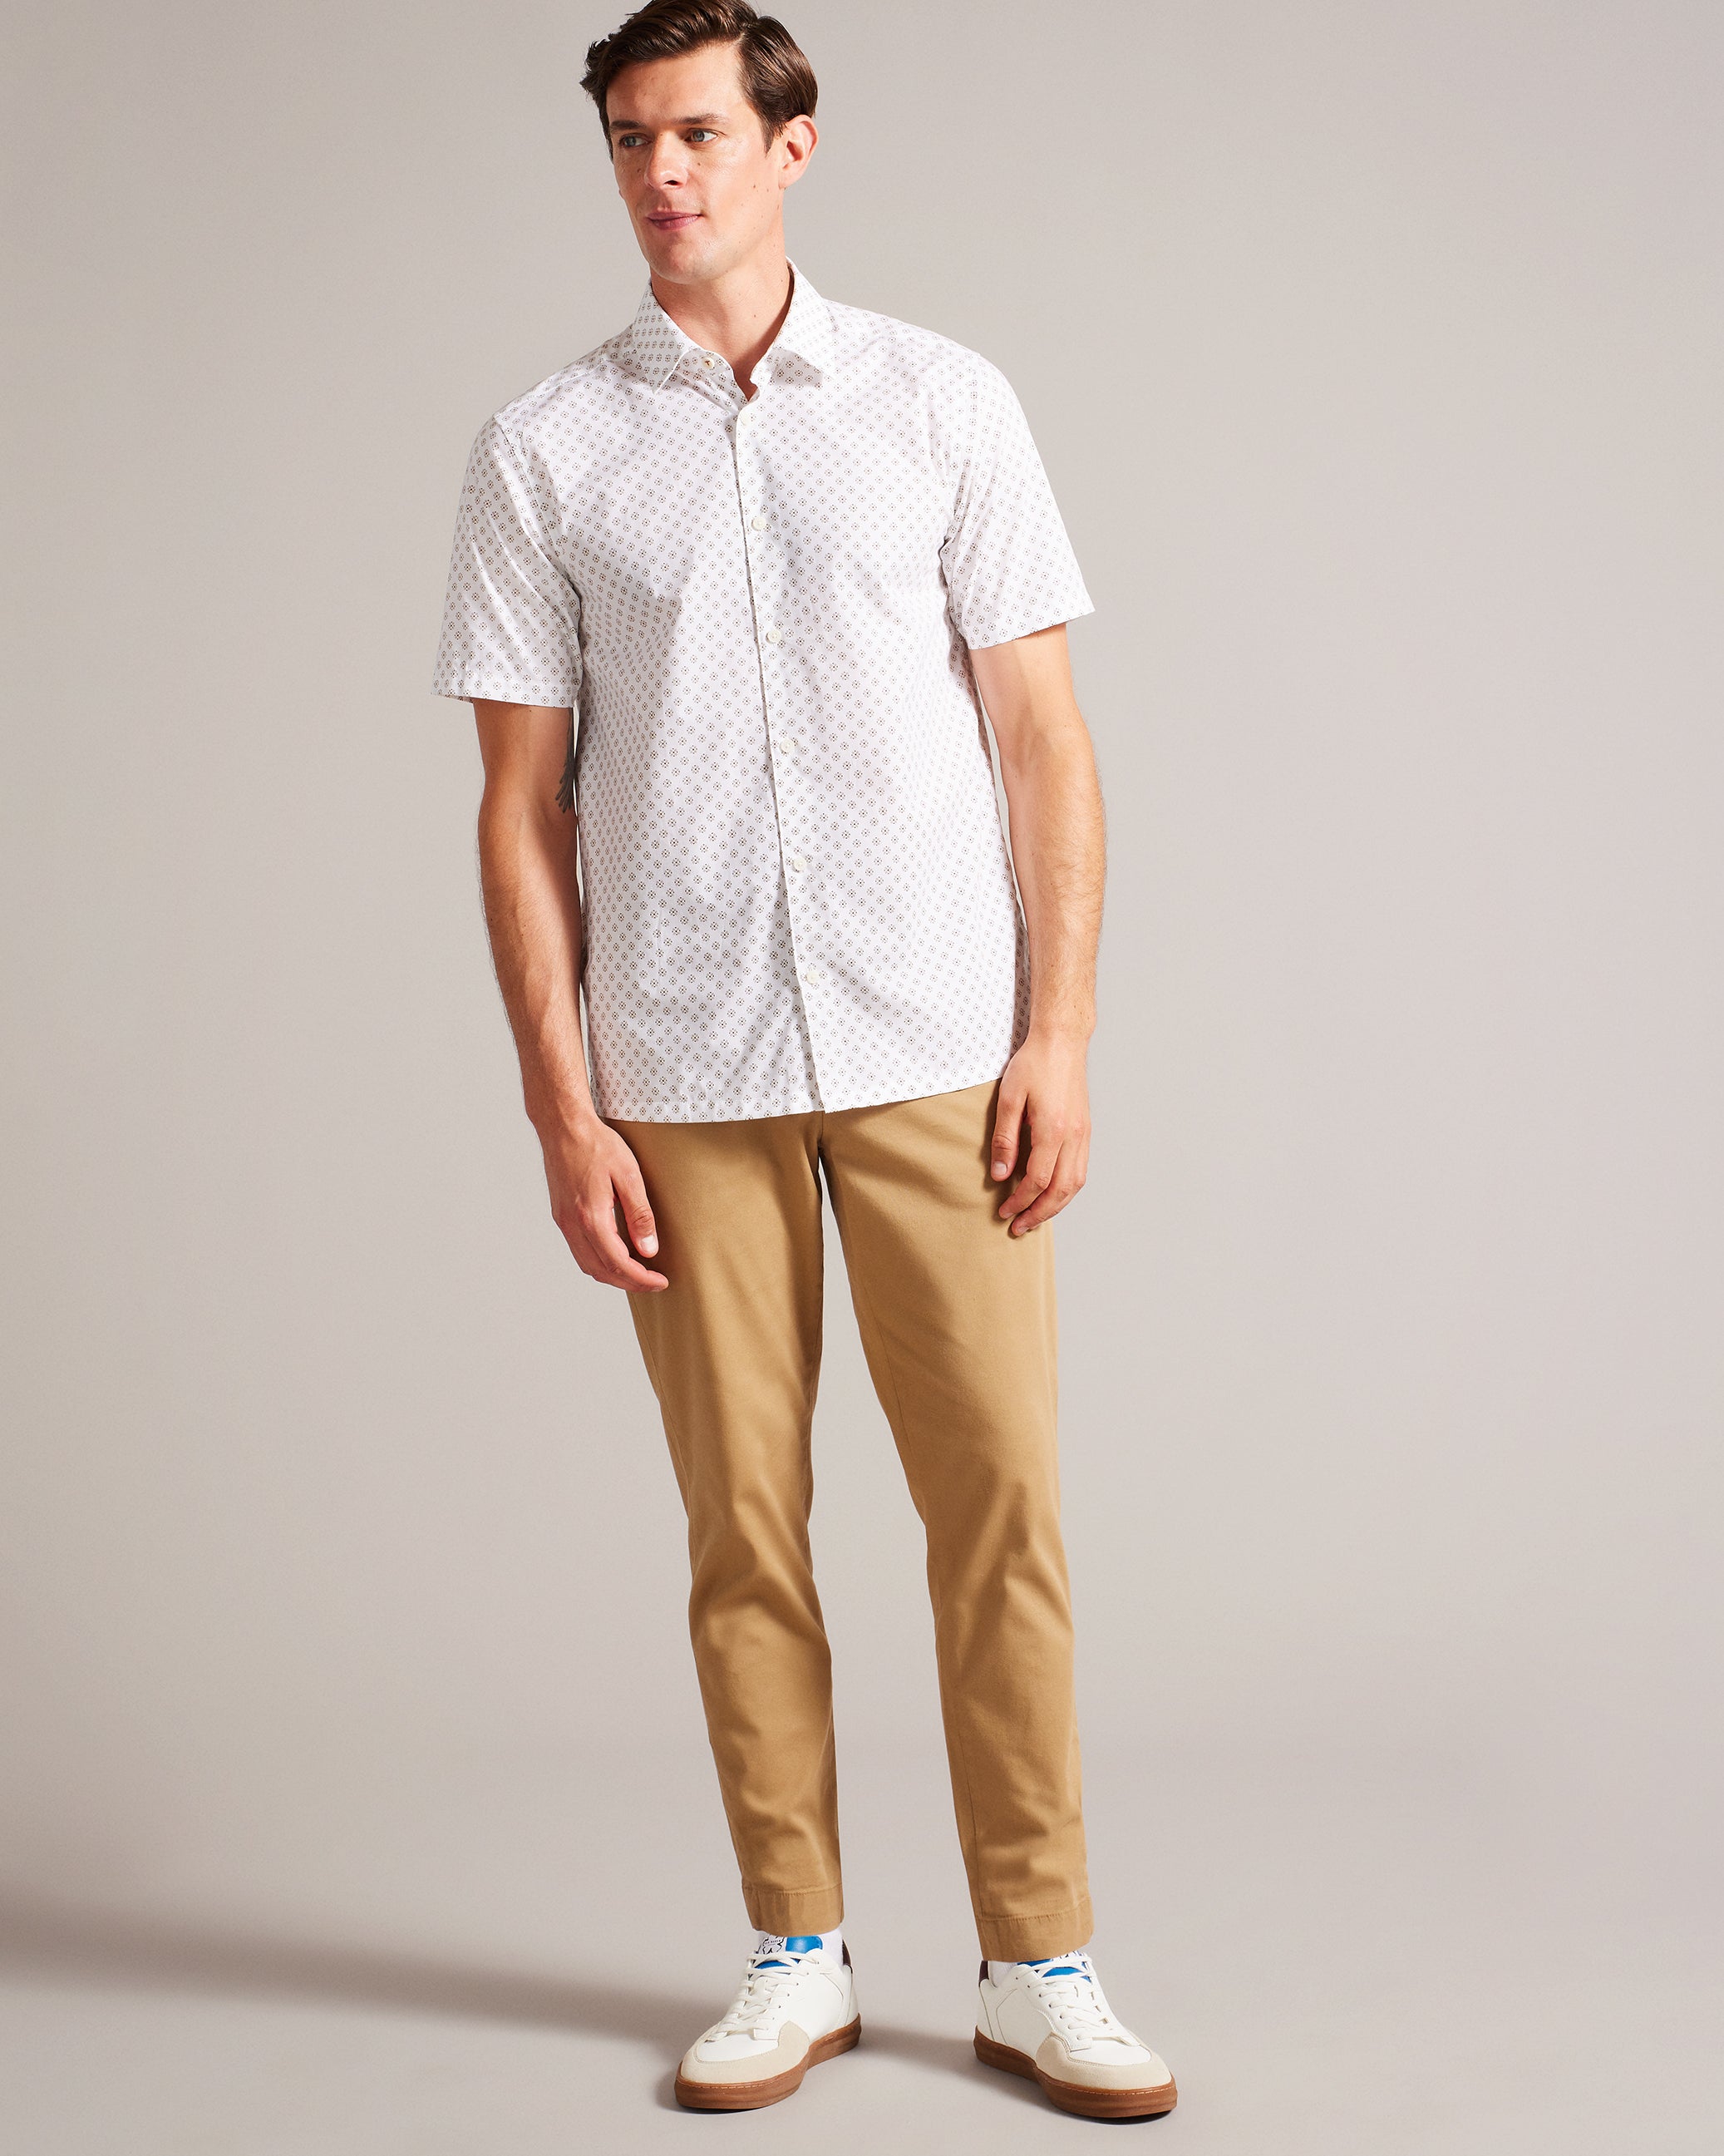 Forter Short Sleeve Geometric Print Shirt White